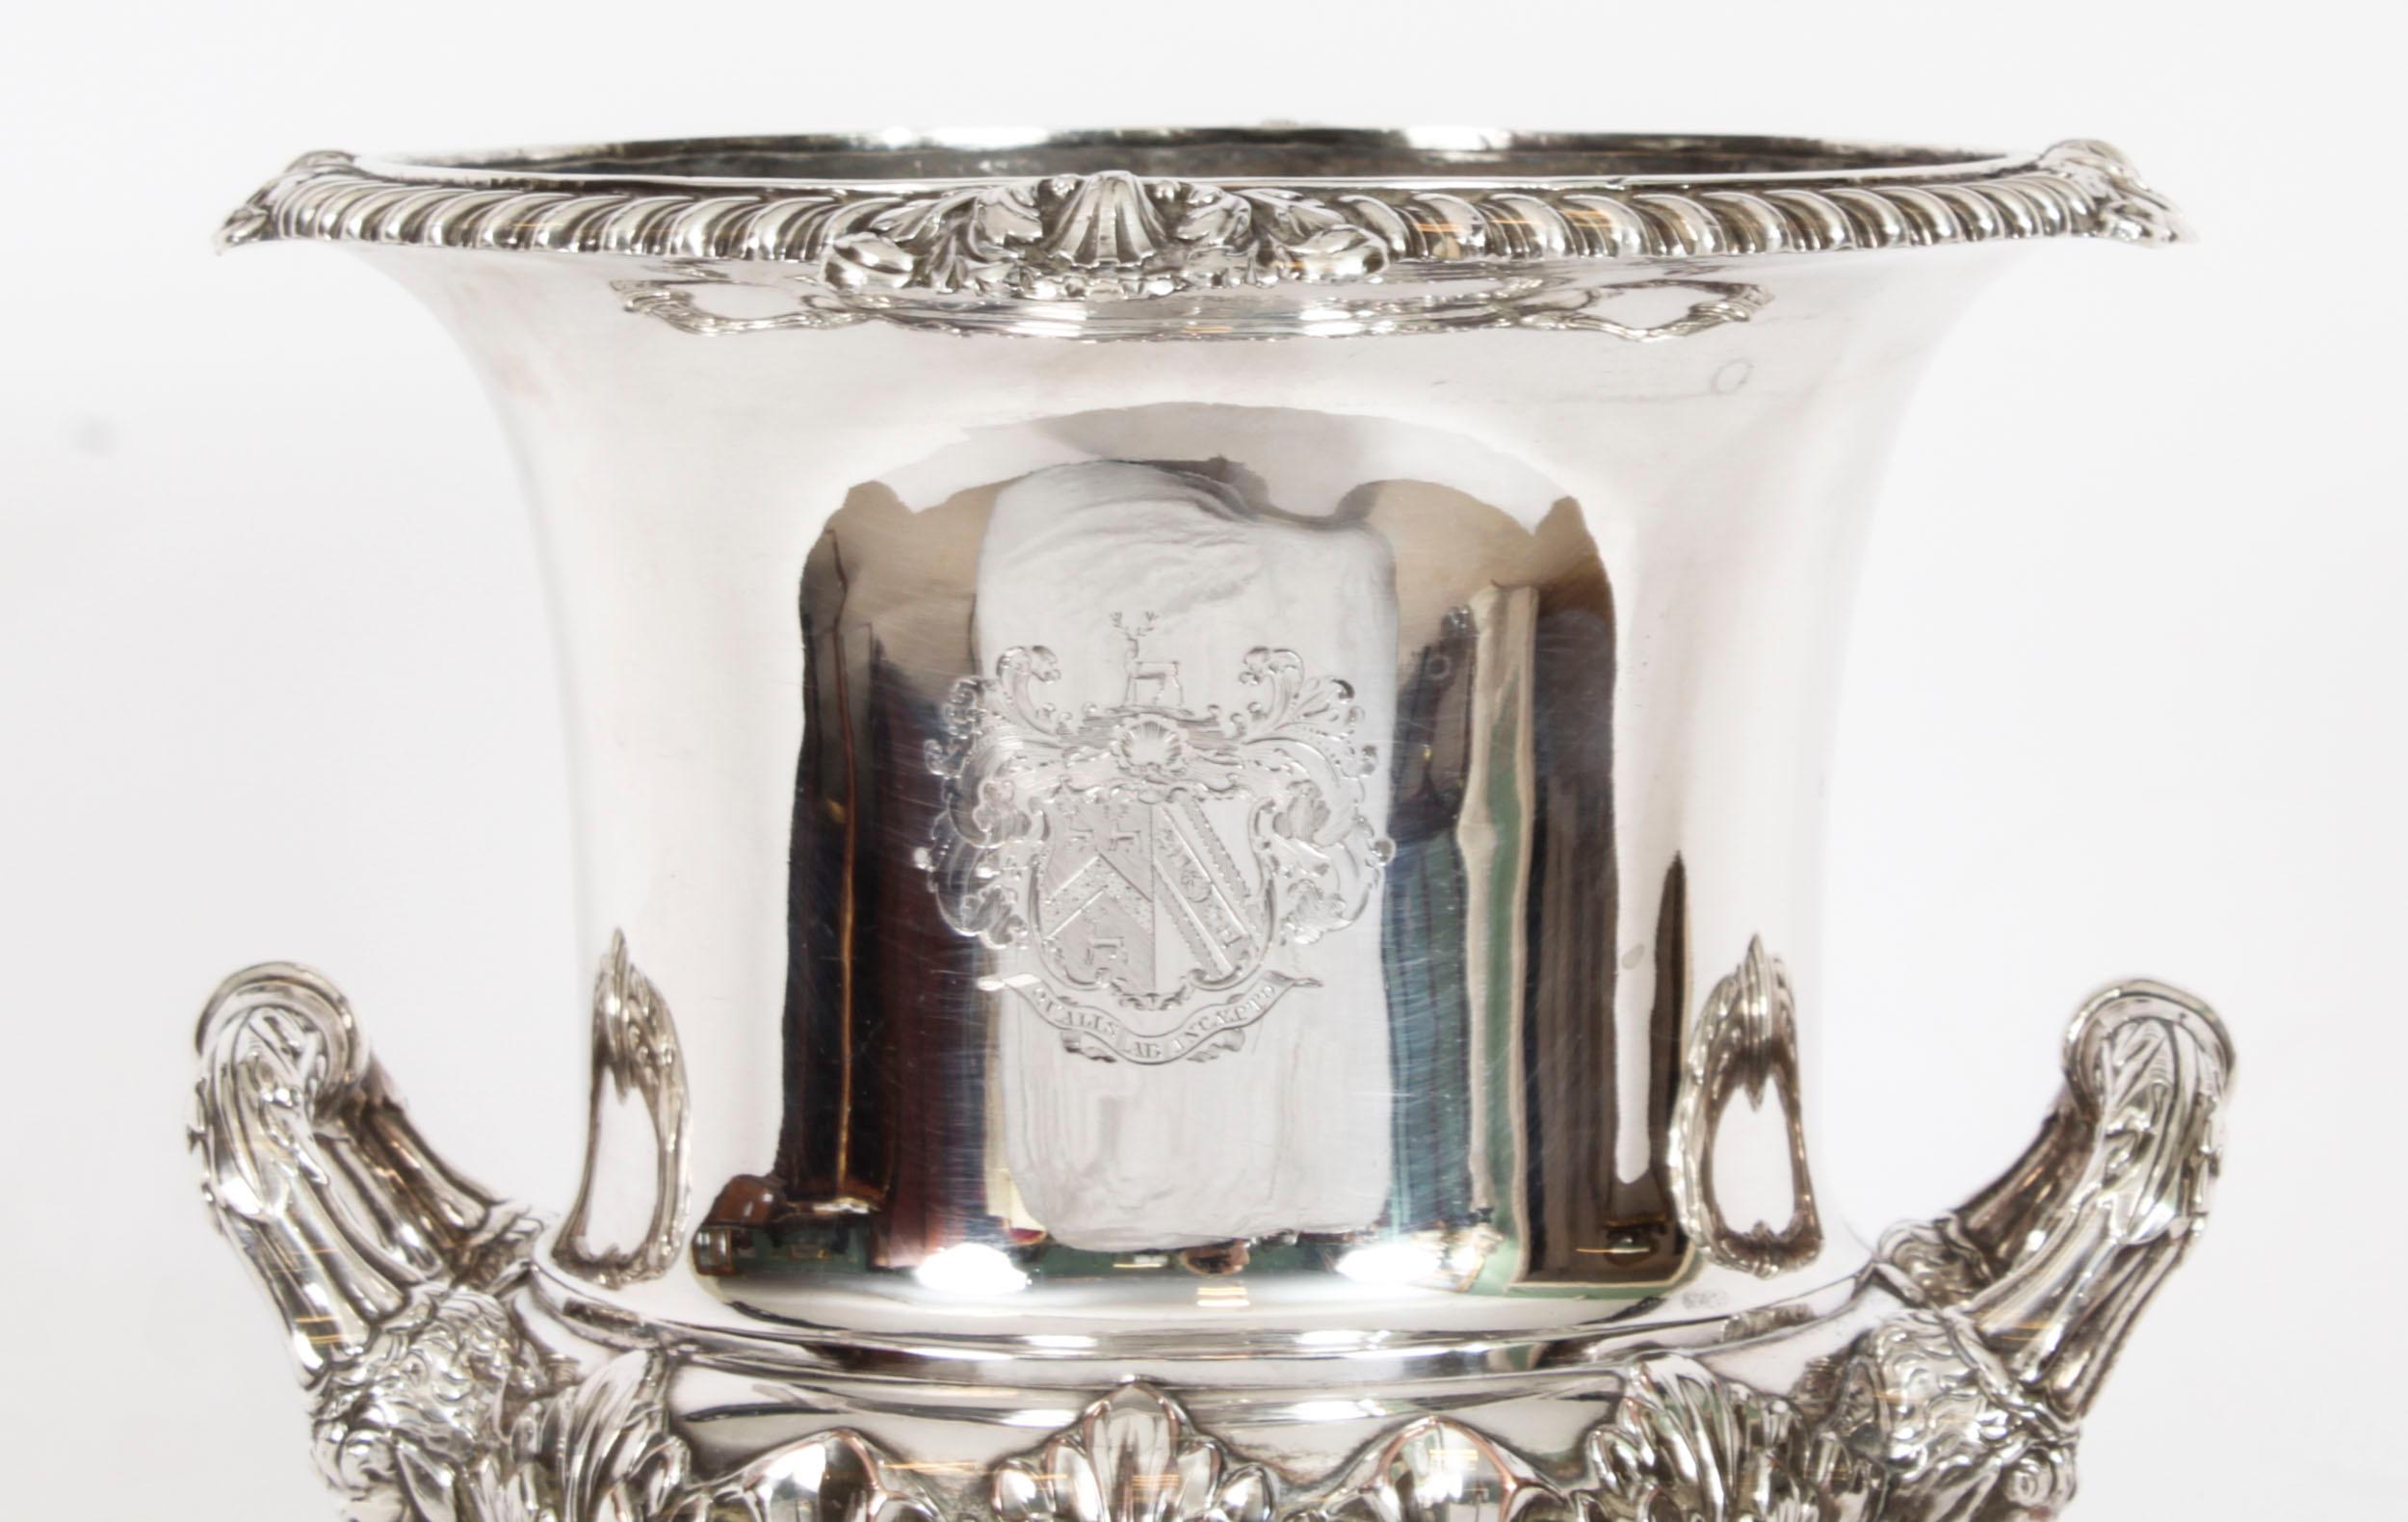 Dies ist eine elegante antike englische Old Sheffield Platte Silber auf Kupfer Eiskübel oder Weinkühler, ca. 1790 in Datum, und mit dem Sonnenschliff Marken des weltbekannten Silberschmied Matthew Boulton.

Der Kühler hat die Form eines